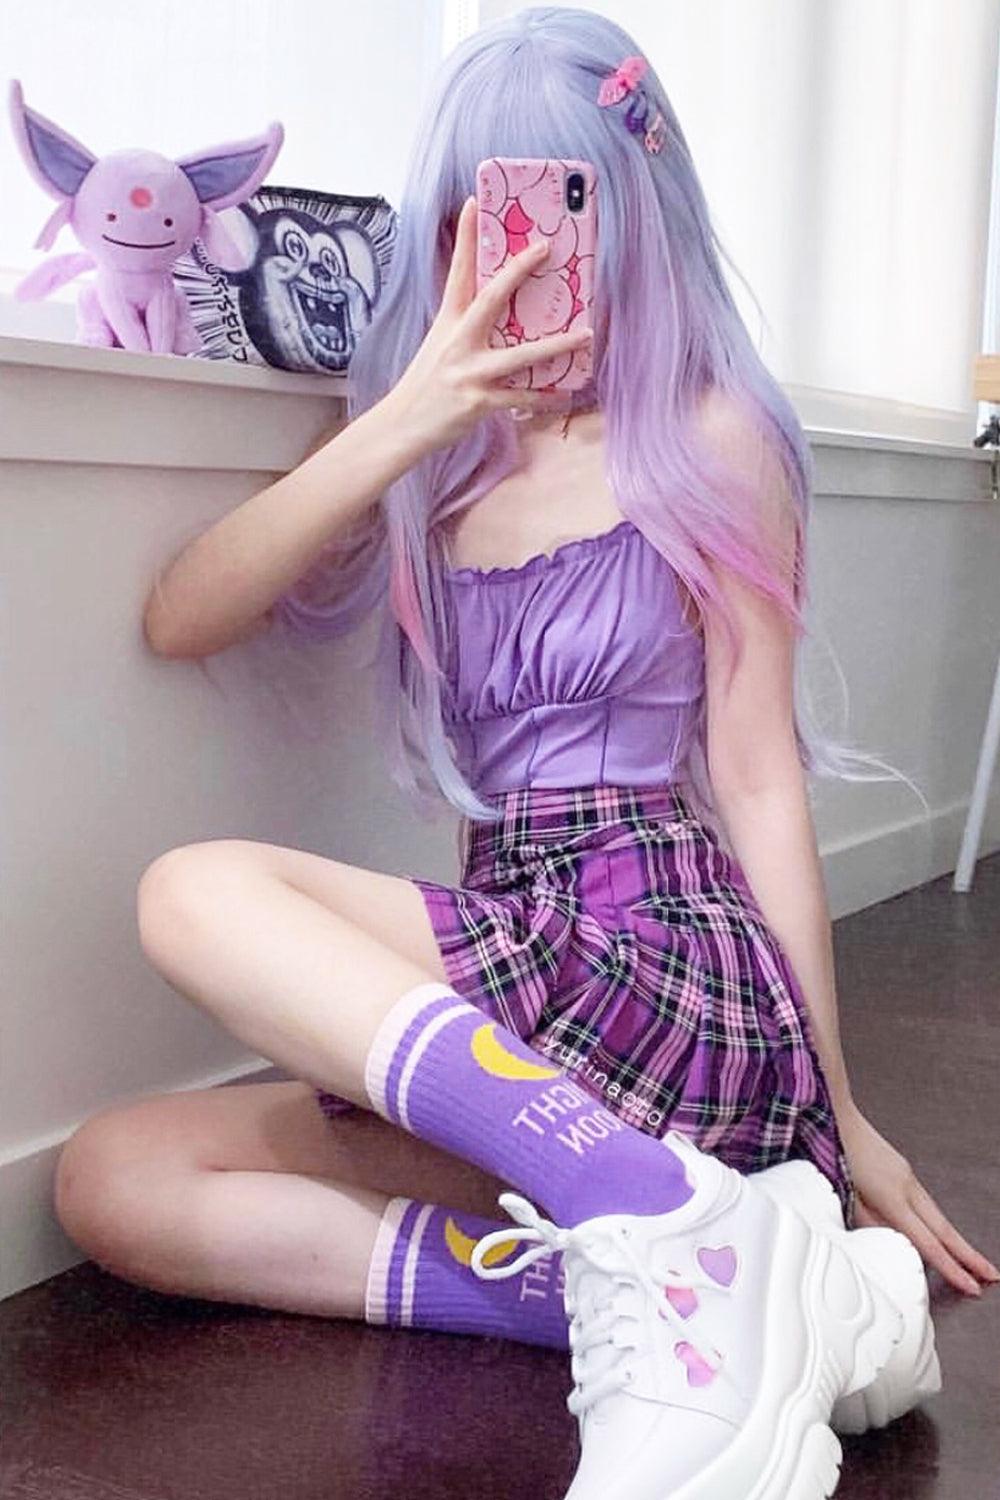 Plaid Pleated Egirl Skirt Purple Aesthetic • Aesthetic Shop L / Purple